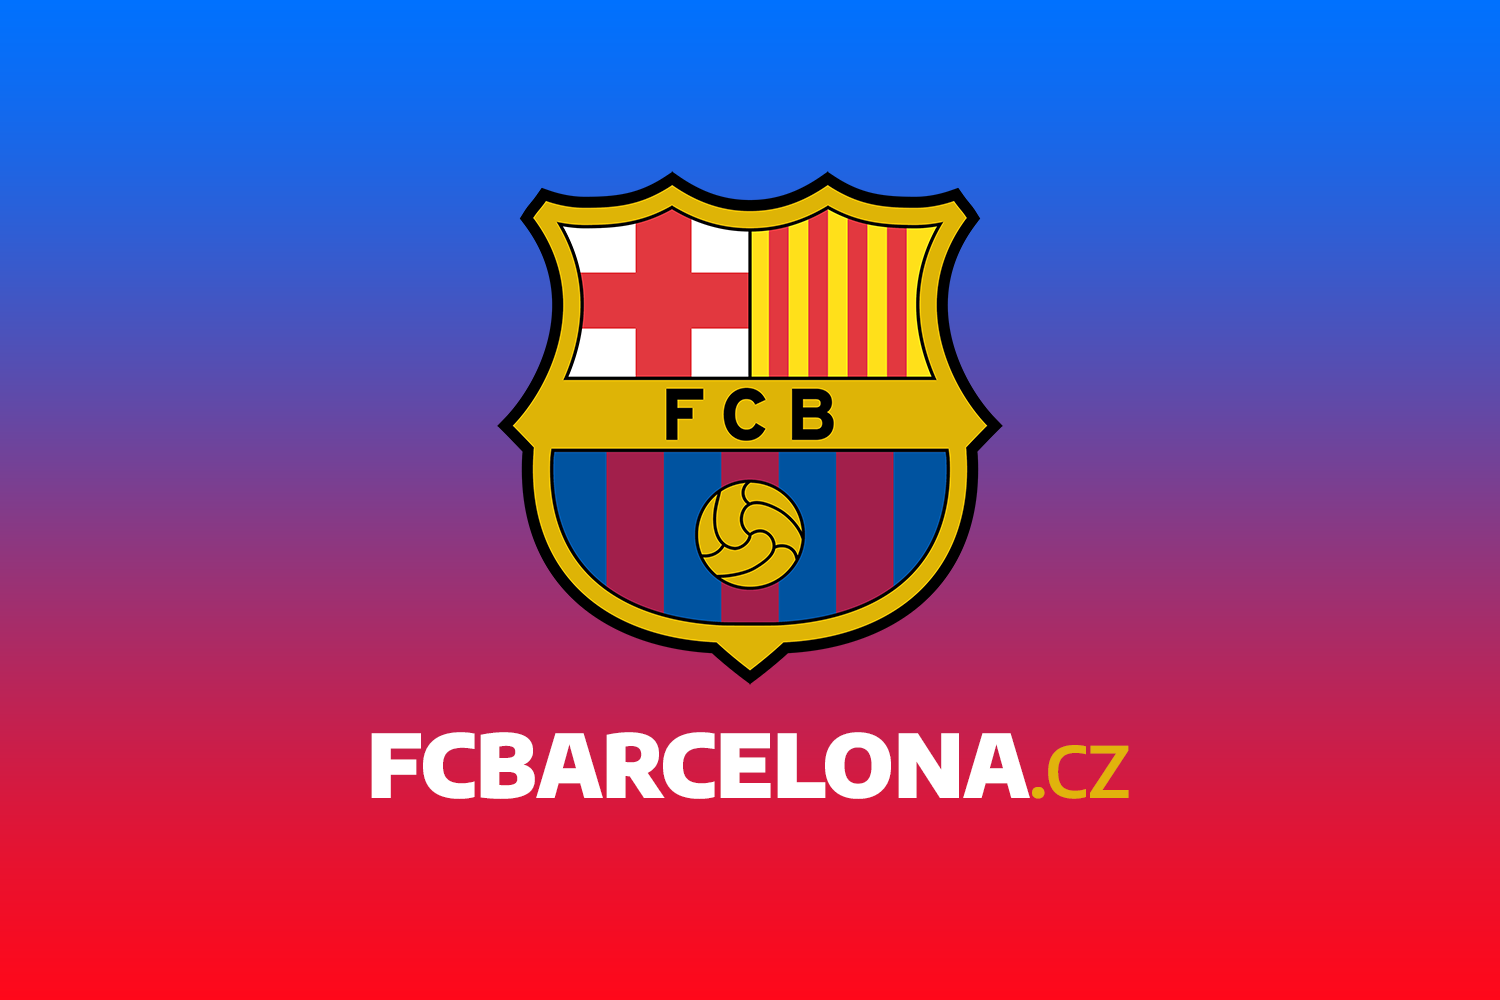 Oficiálně: FC Barcelona se dohodla a uzavřela smlouvy na financování Espai Barça